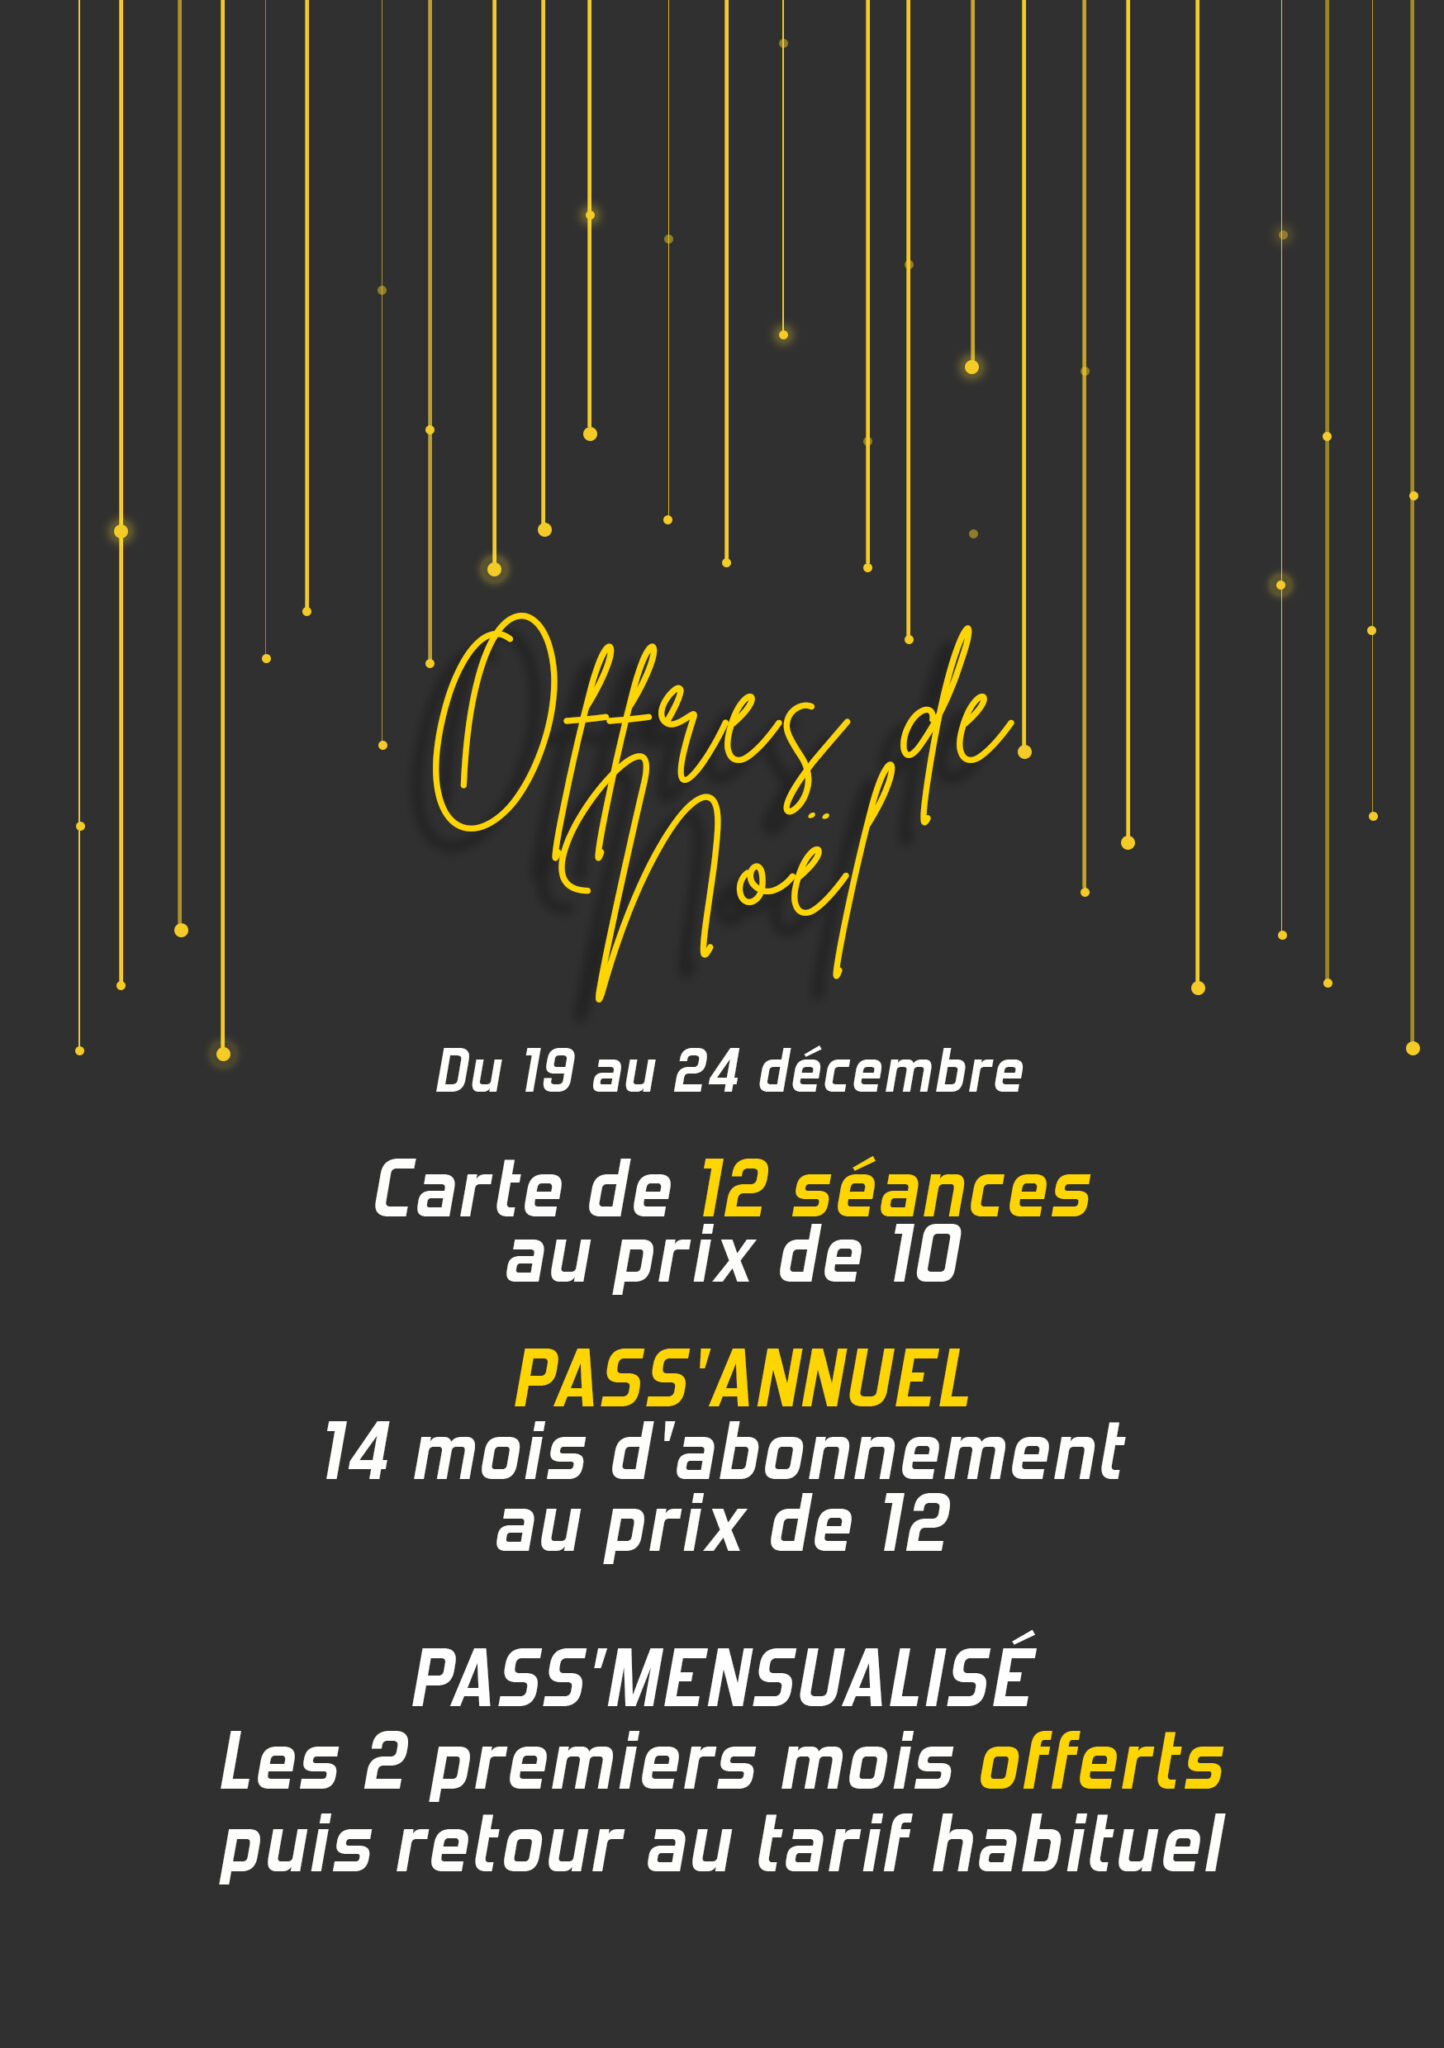 Méga-offres de Noël Vertical'Art 2022 du 19 au 24 décembre